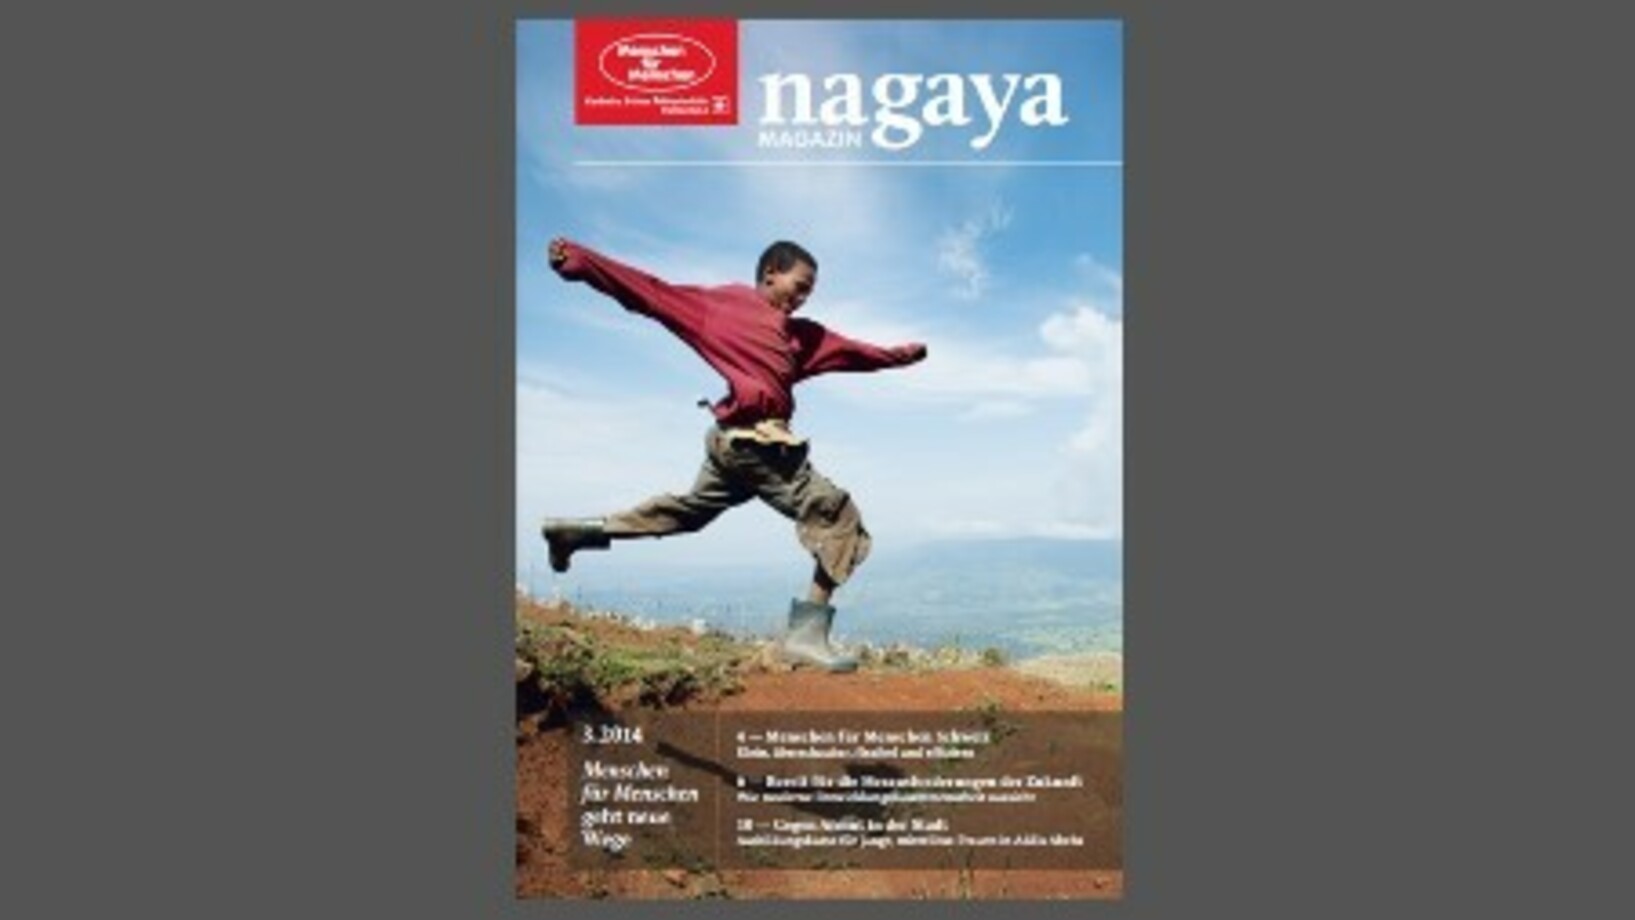 Vorschaubild Nagaya Magazin 3.2014